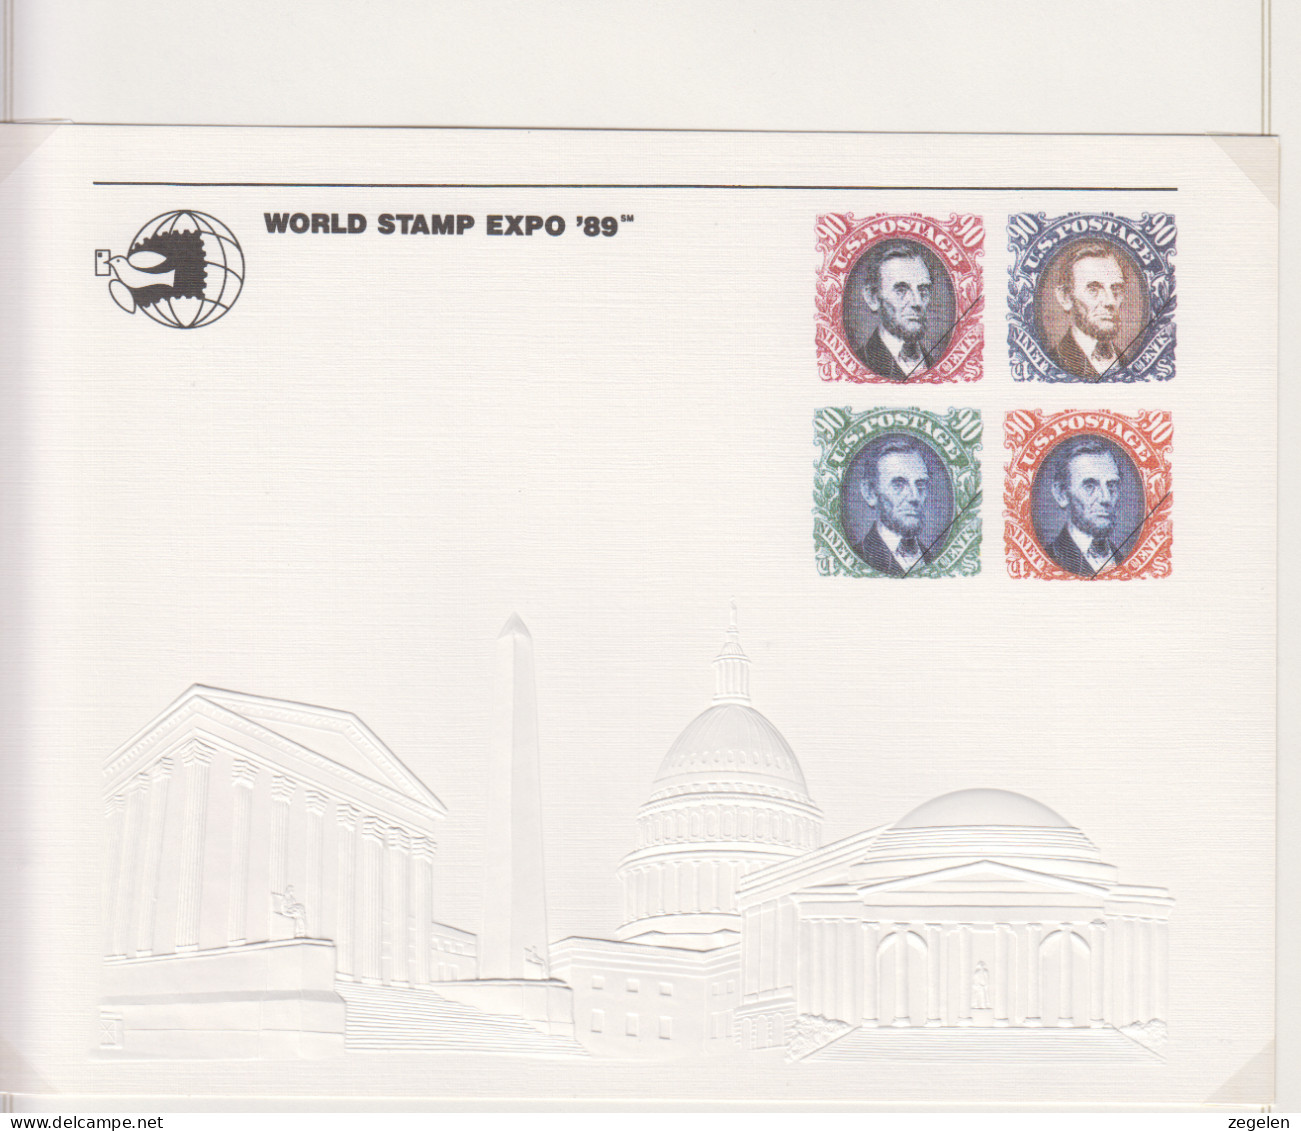 Verenigde Staten  Scott-cat Souvenierkaart SC127 World Stamp Expo 89 - Souvenirkaarten